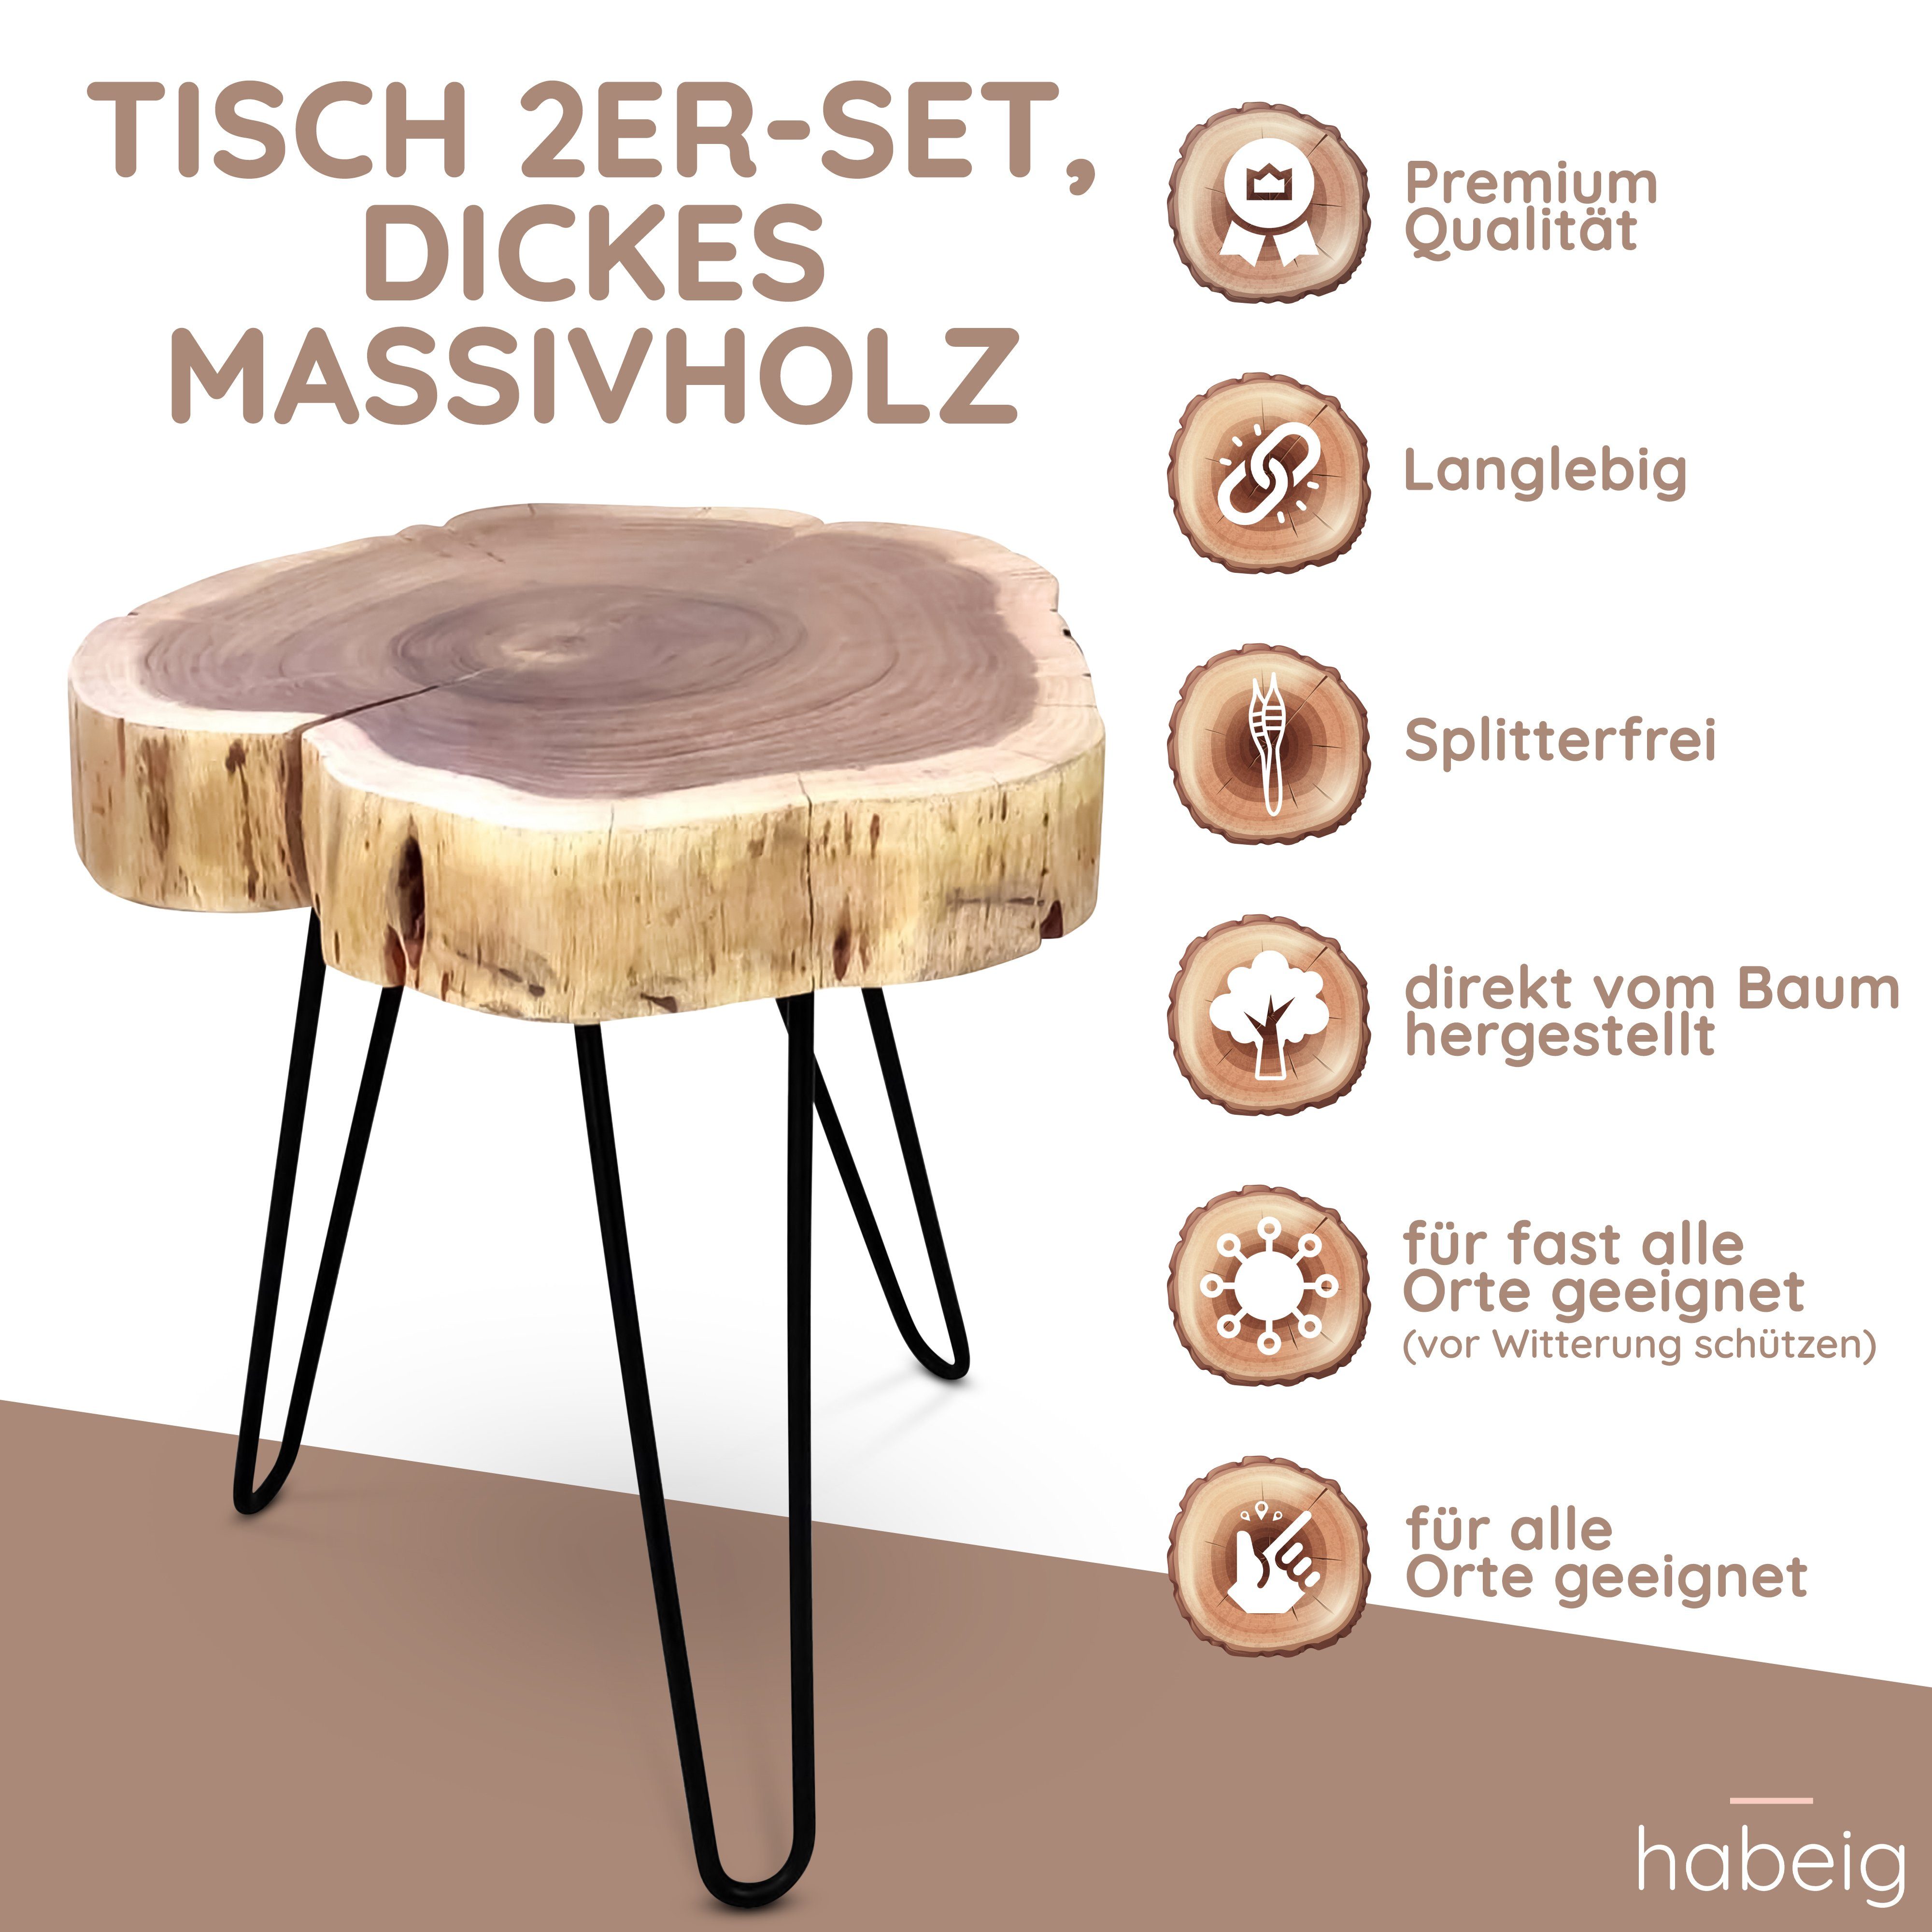 Echtholz Massivholz habeig rustikal im 50x40cm, 2er-Set Dickes Beistelltisch Beistelltisch rustikal Echtholz